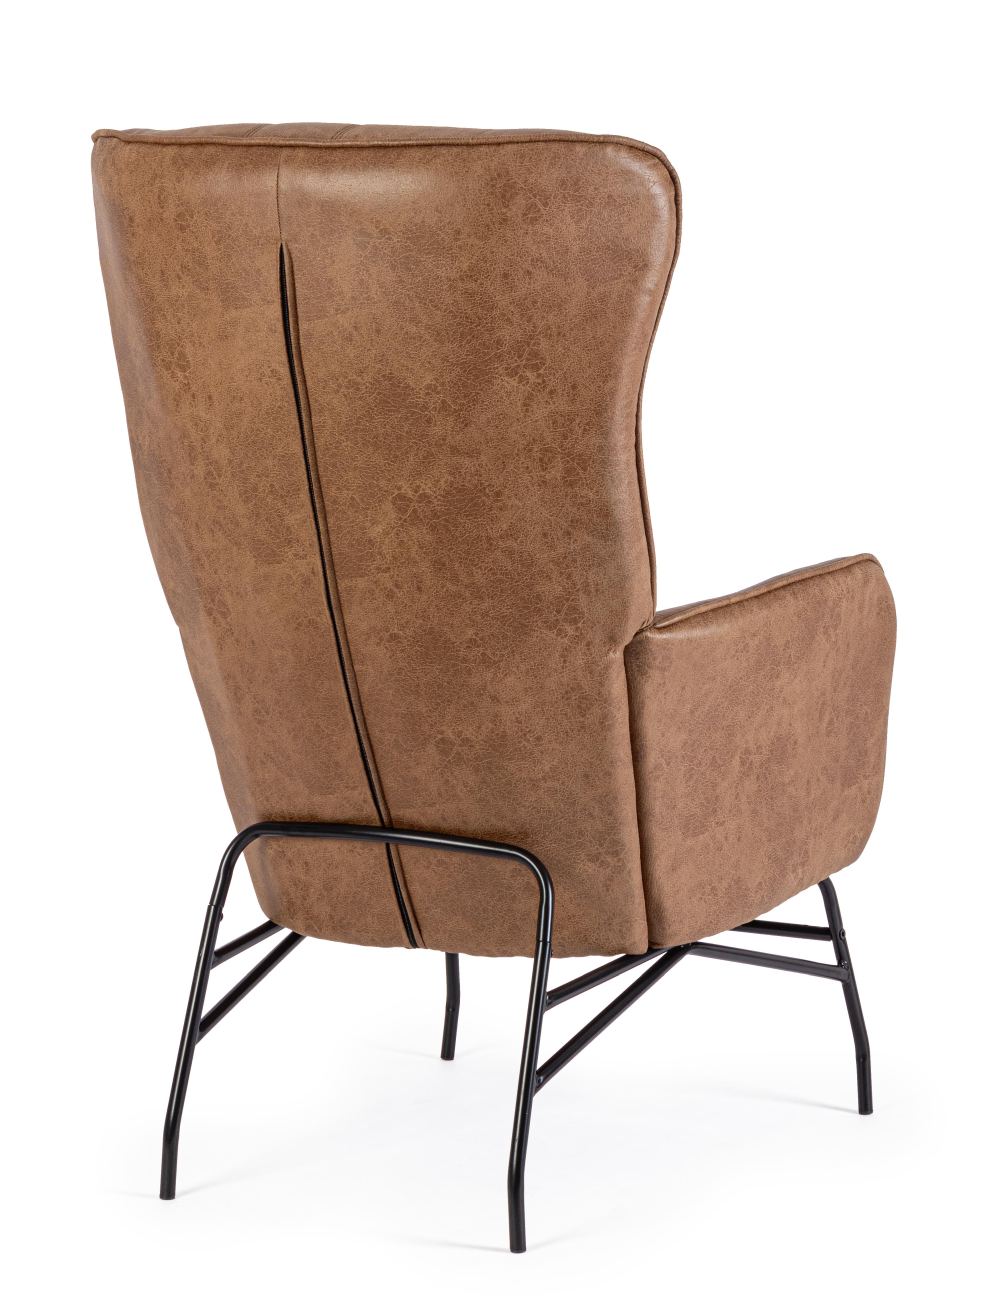 Der Sessel Nasira überzeugt mit seinem modernen Stil. Gefertigt wurde er aus Kunstleder, welches einen braunen Farbton besitzt. Das Gestell ist aus Metall und hat eine schwarze Farbe. Der Sessel besitzt eine Sitzhöhe von 50 cm.